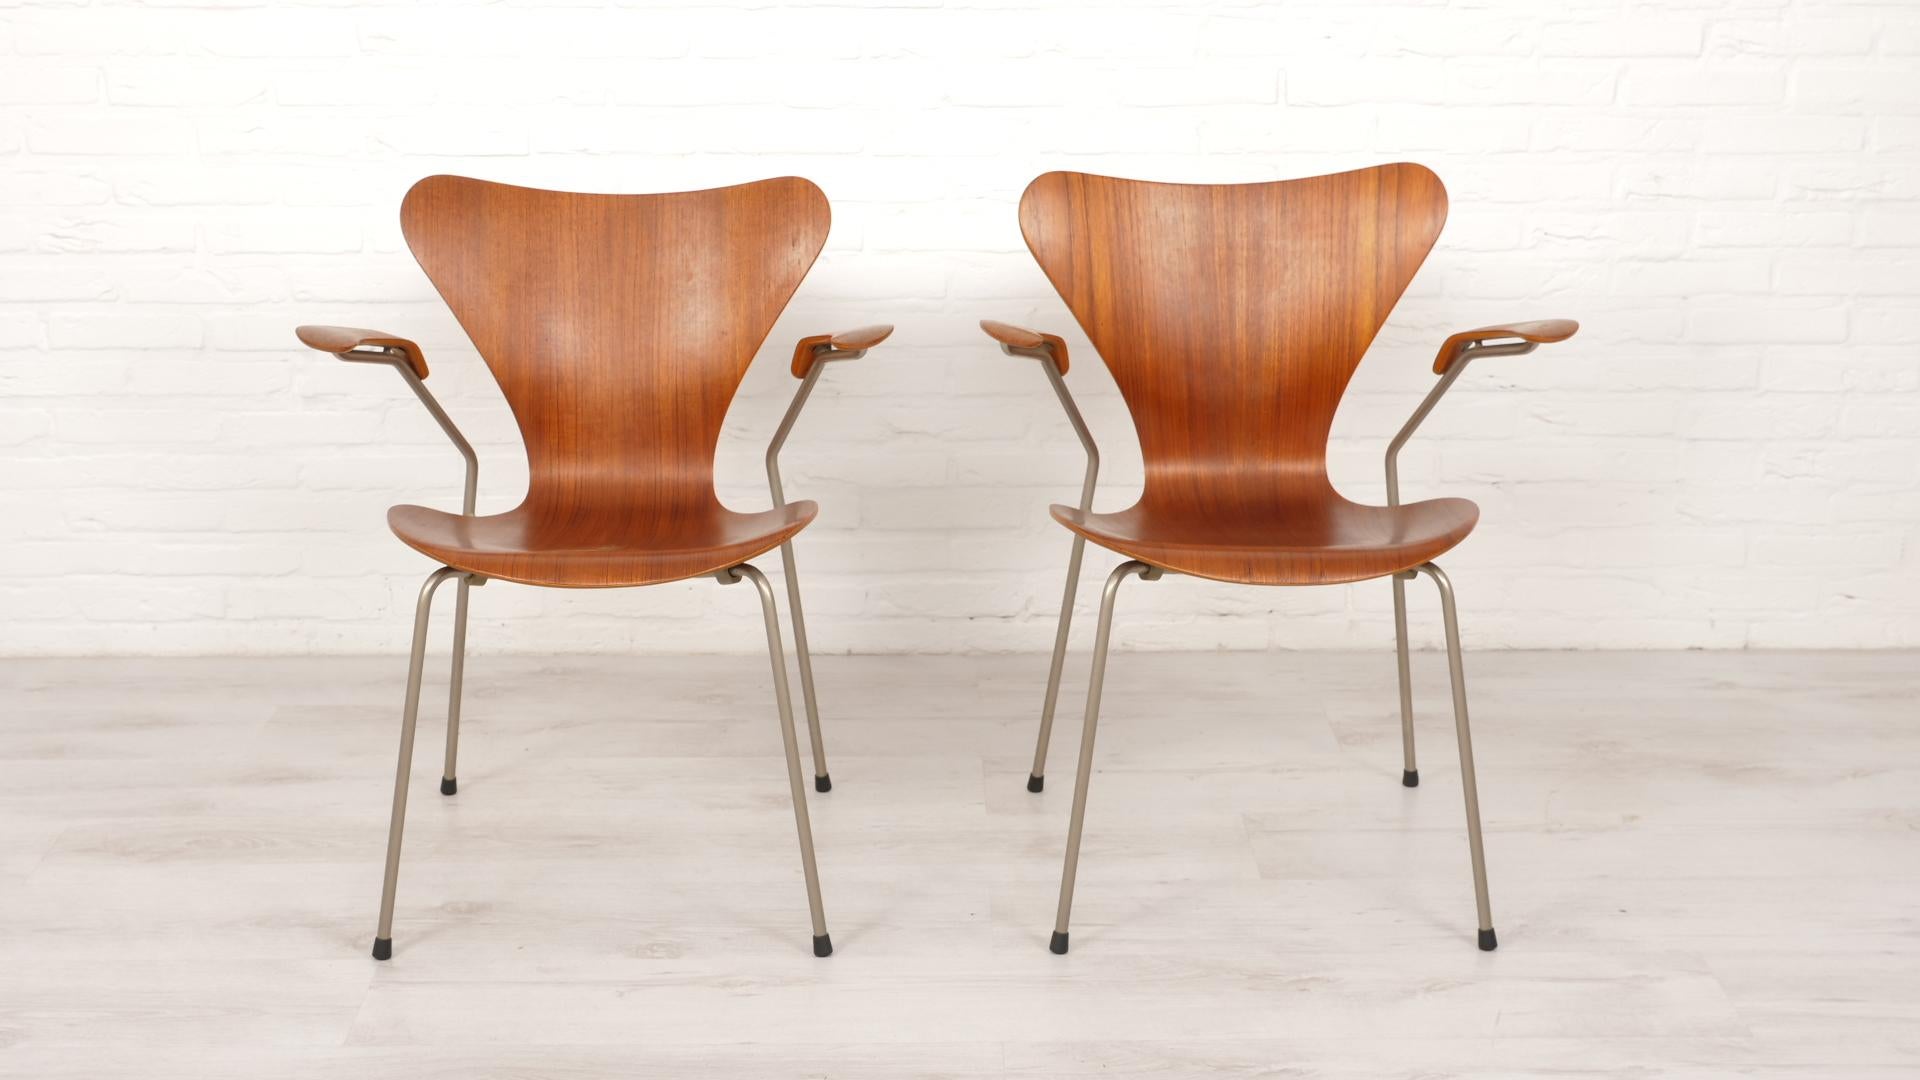 Satz von 2 schönen Vintage Schmetterlingsstühlen mit Armlehne Modell 3207, entworfen von Arne Jacobsen für Fritz Hansen. Dieses Set ist aus Teakholz und ist eine frühe Ausgabe.

Zeitraum des Designs: 1950 - 1960
Stil: Moderne Mitte des Jahrhunderts